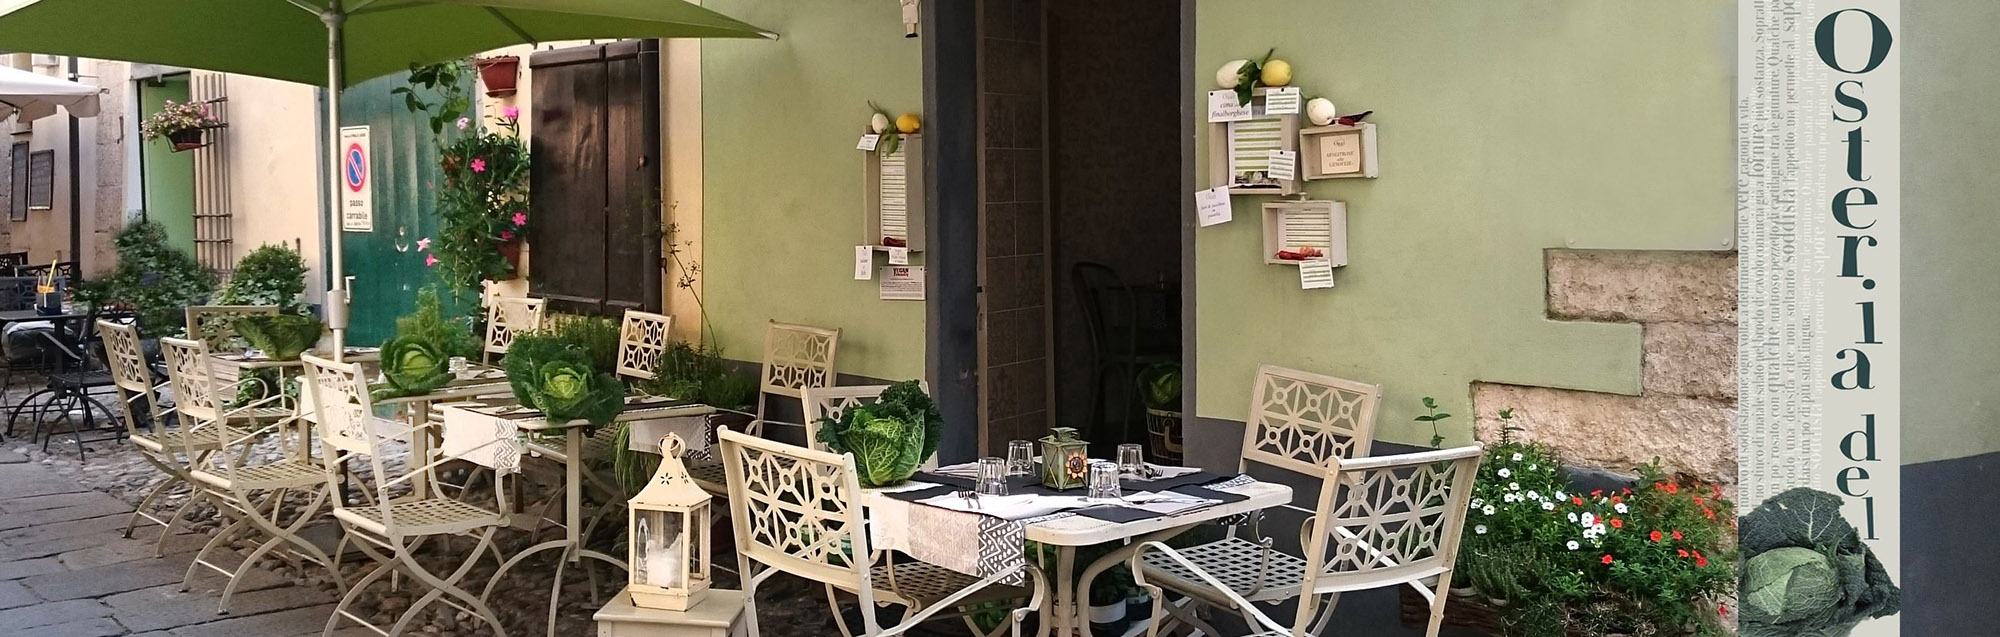 Das Restaurant befindet sich im Golf von Genua, wo Eintrittsgebühren üblich sind